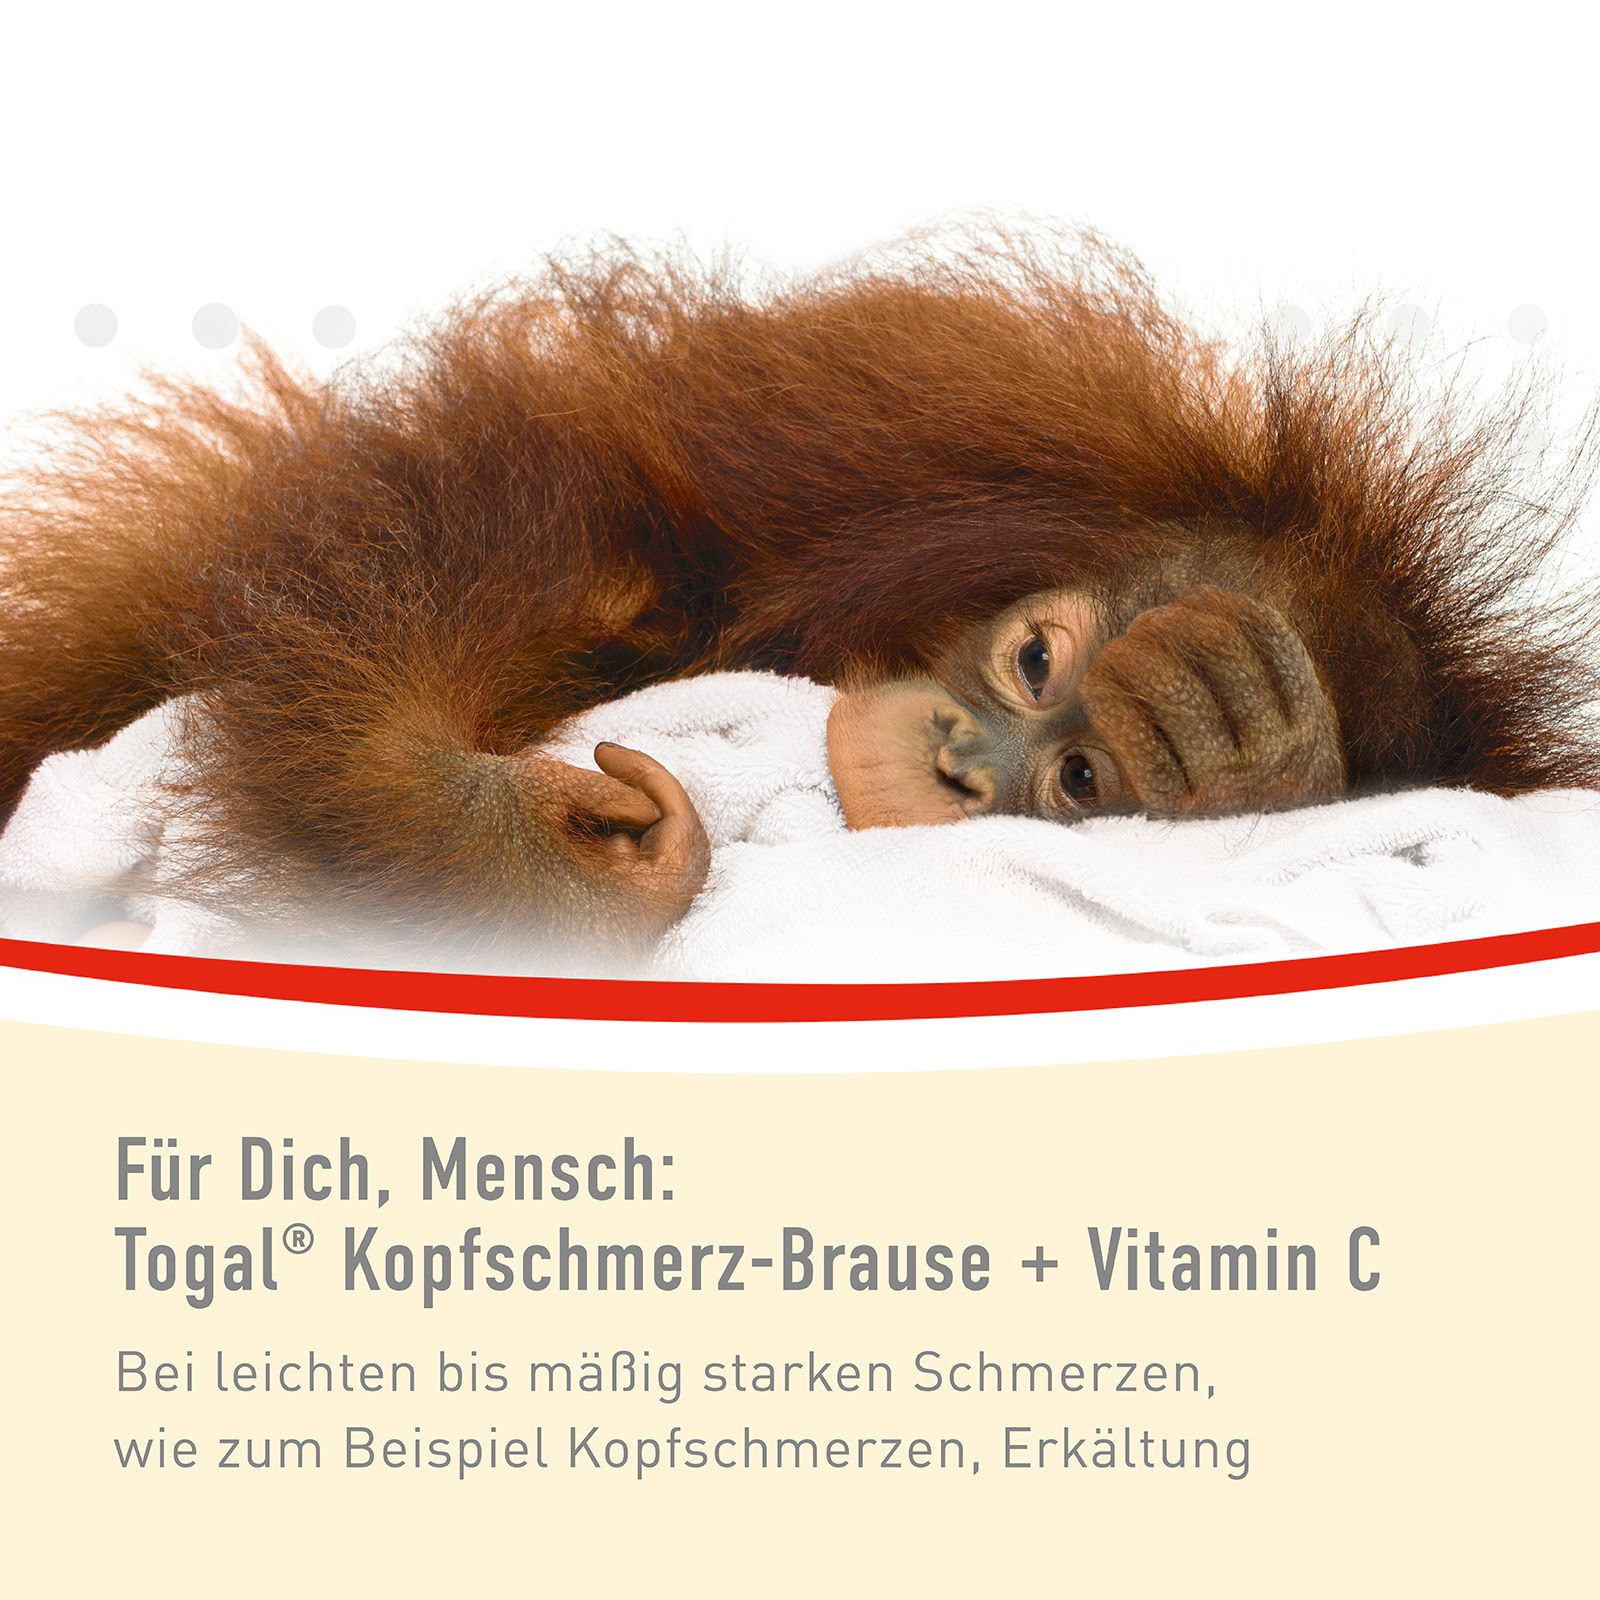 Togal® Kopfschmerz-Brause + Vitamin C